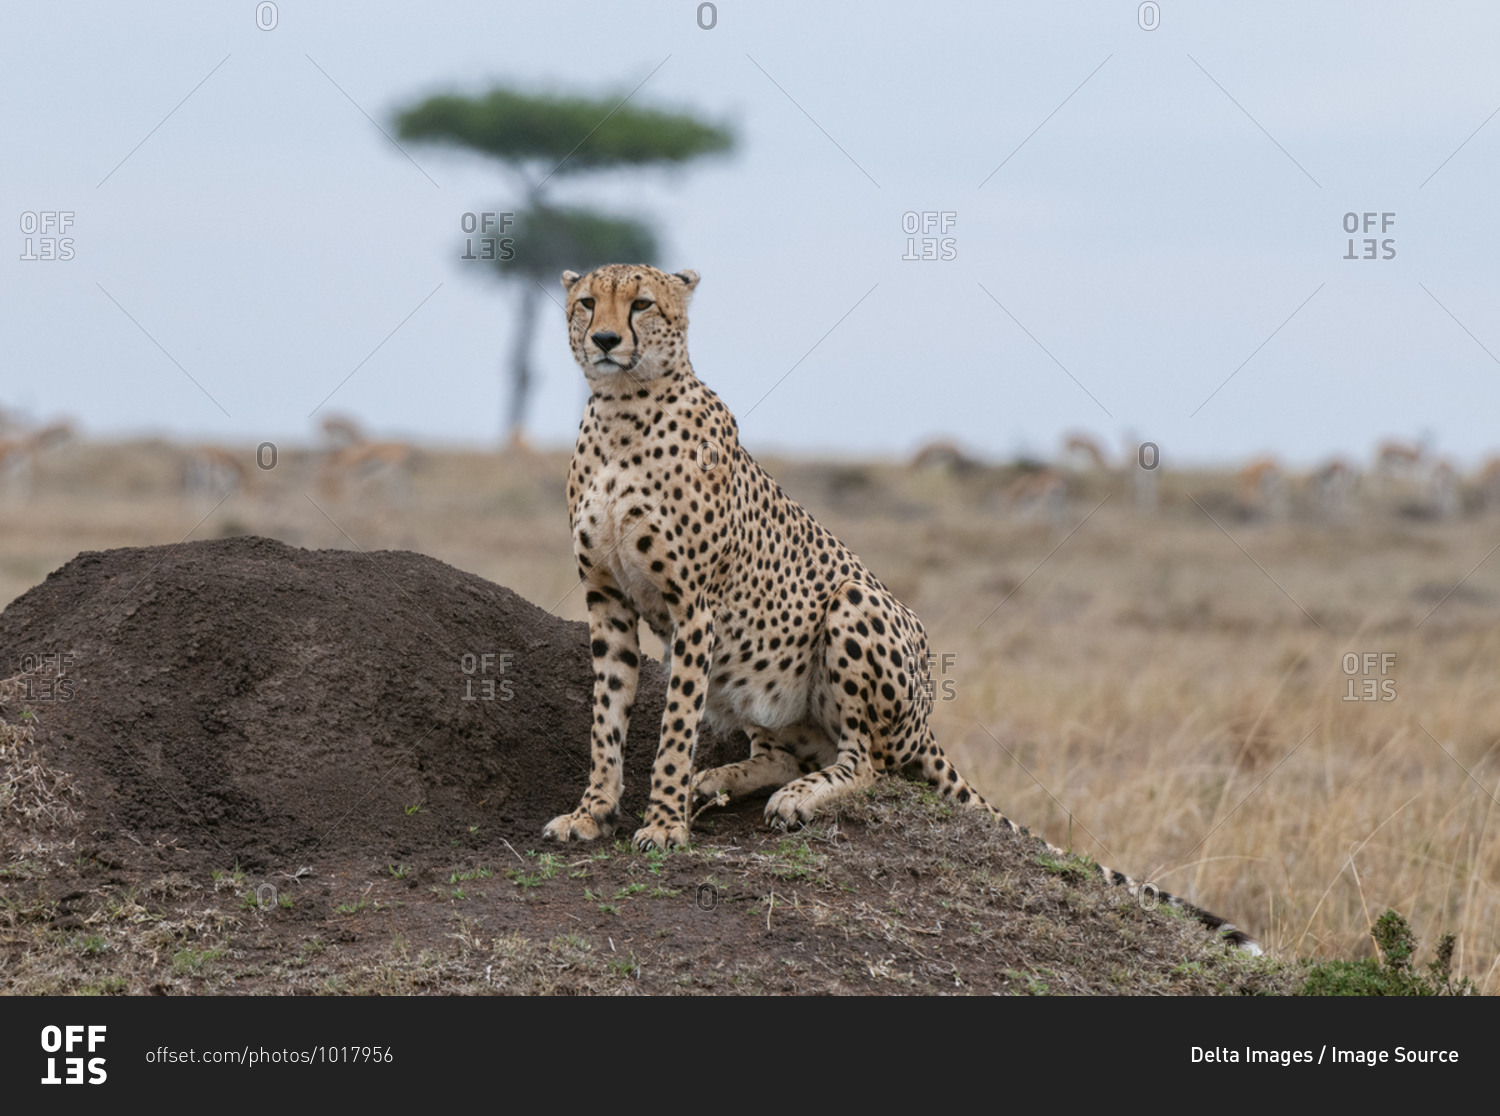 Cheetah (Acinonyx jubatus), Masai Mara National Reserve, Kenya